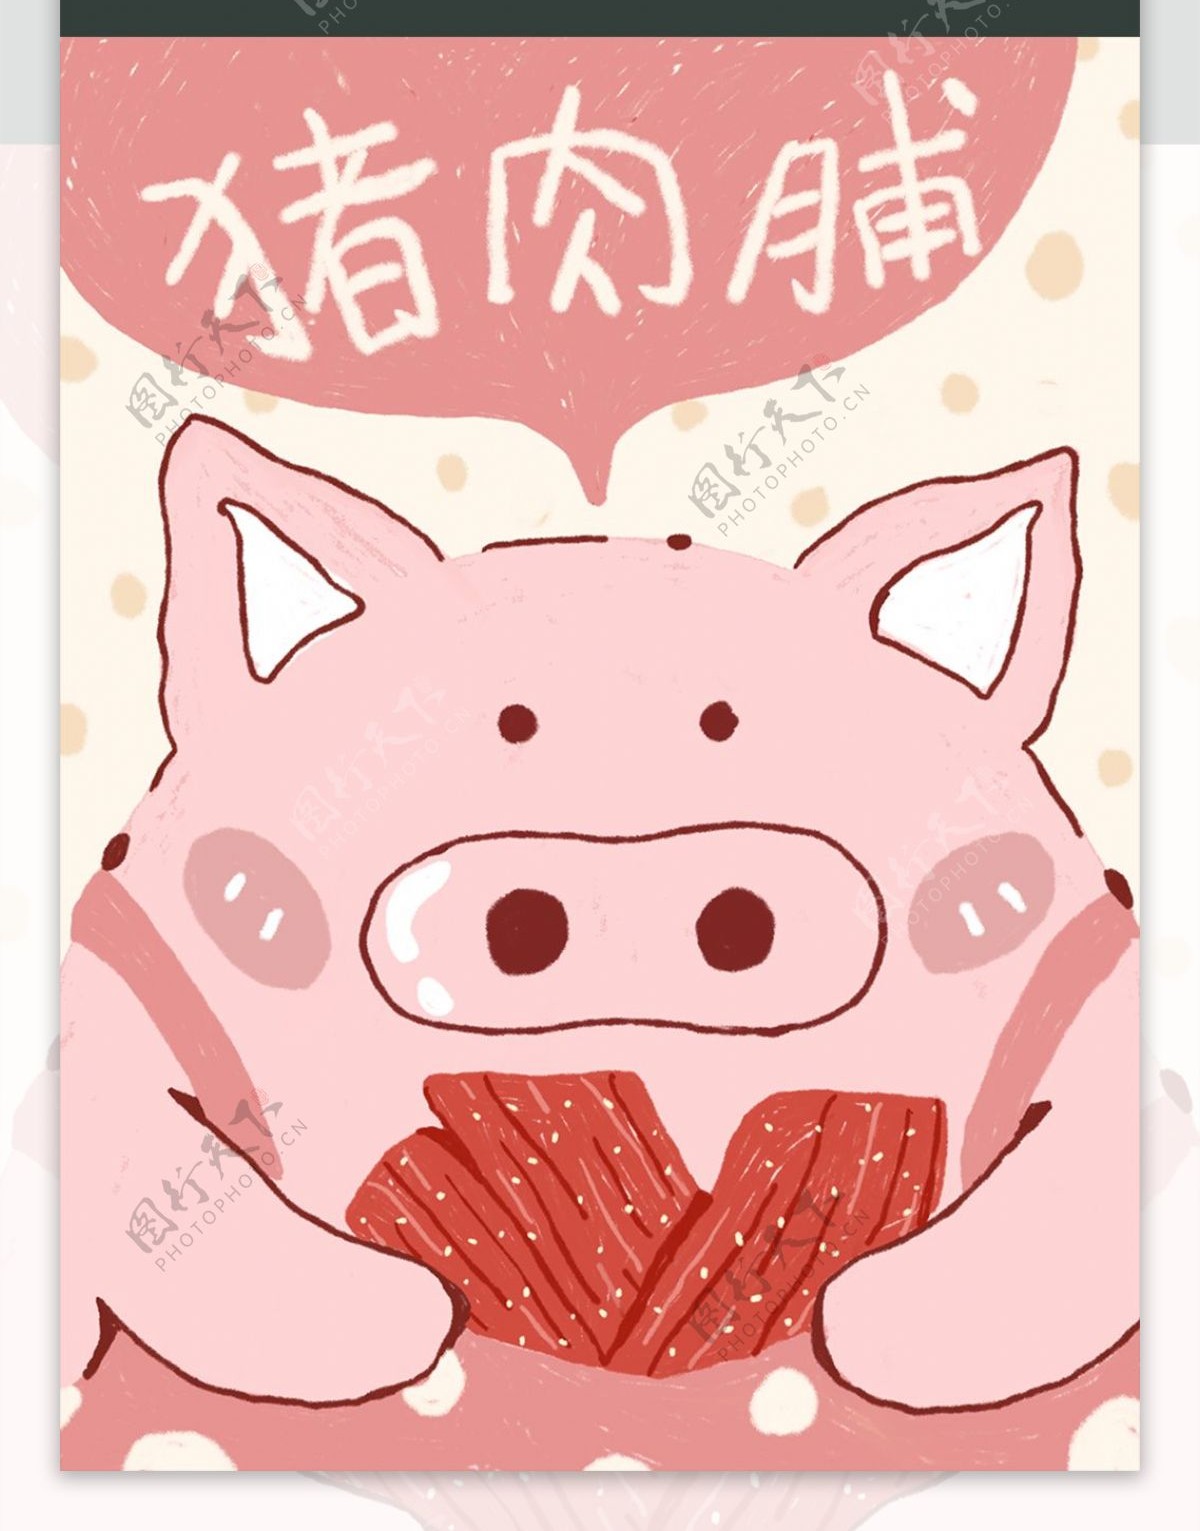 小猪猪肉铺可爱包装插画